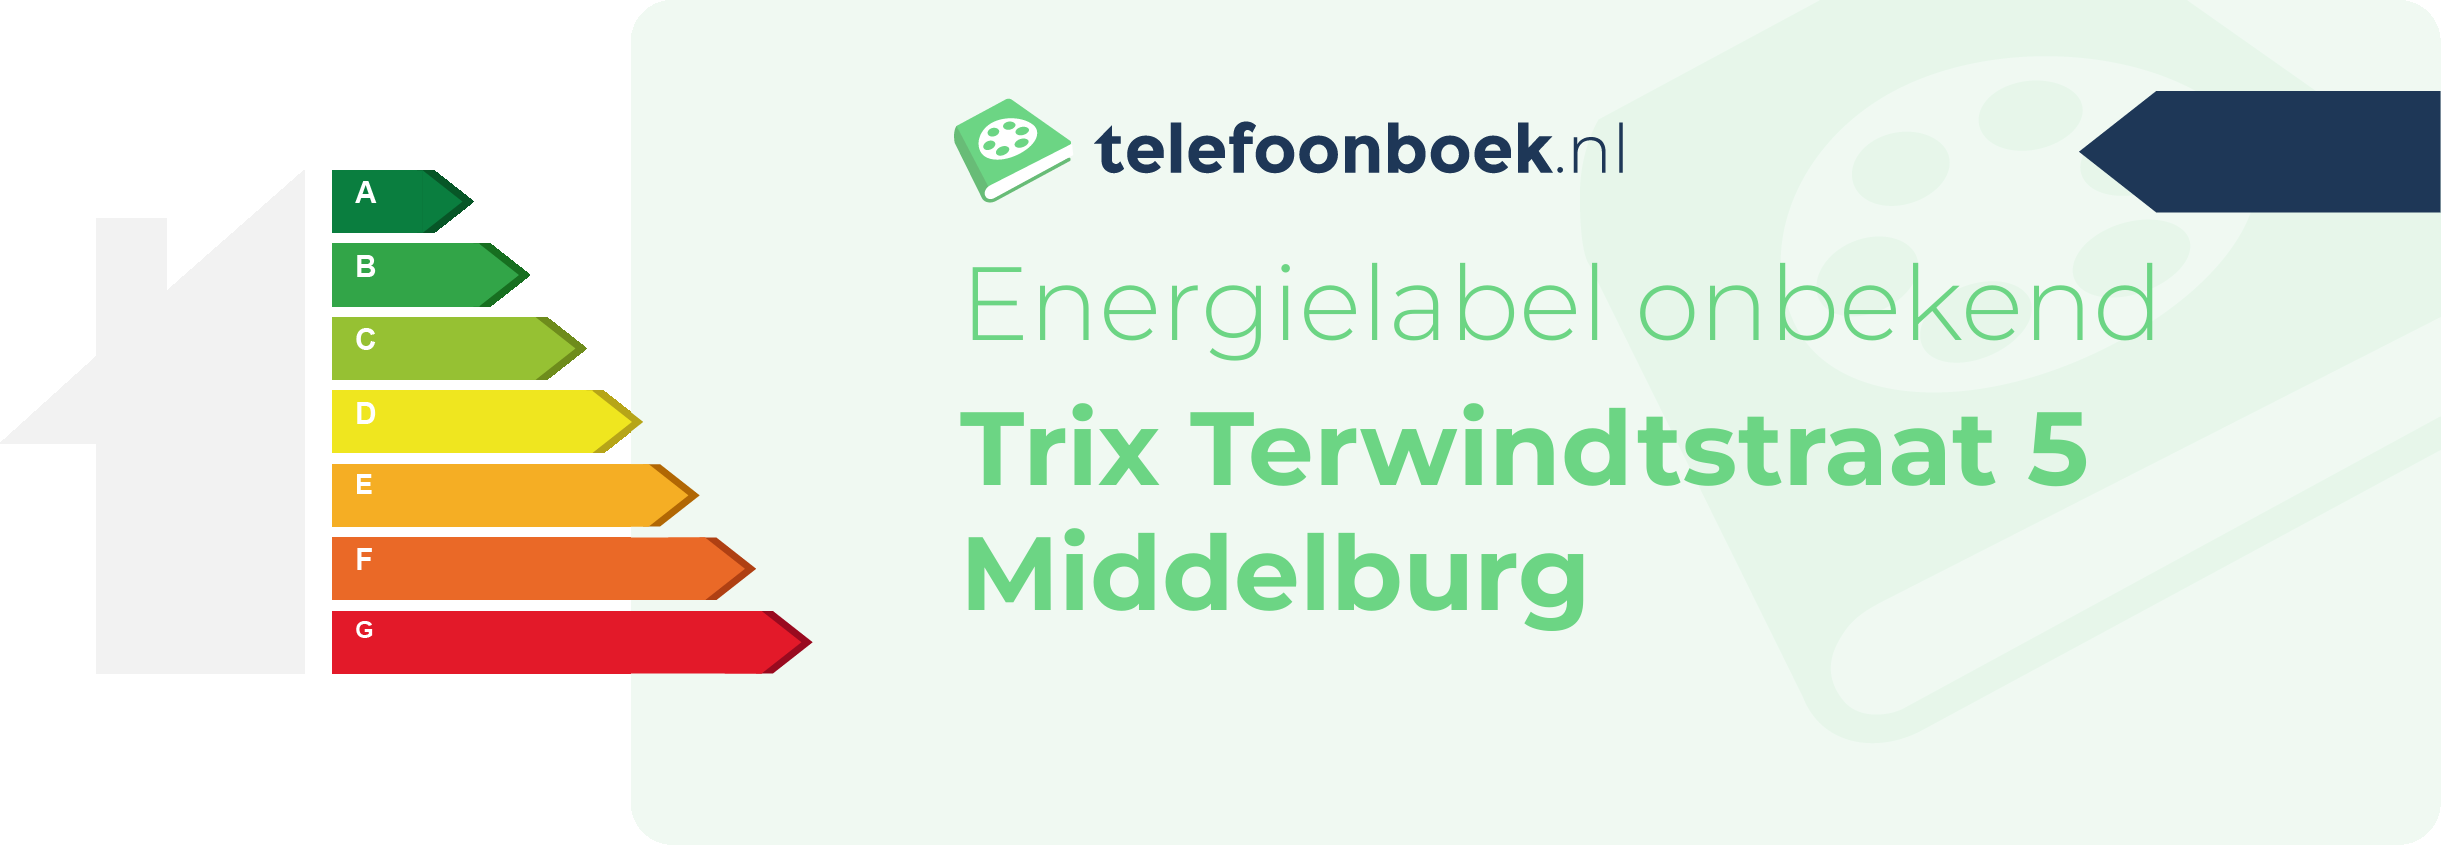 Energielabel Trix Terwindtstraat 5 Middelburg